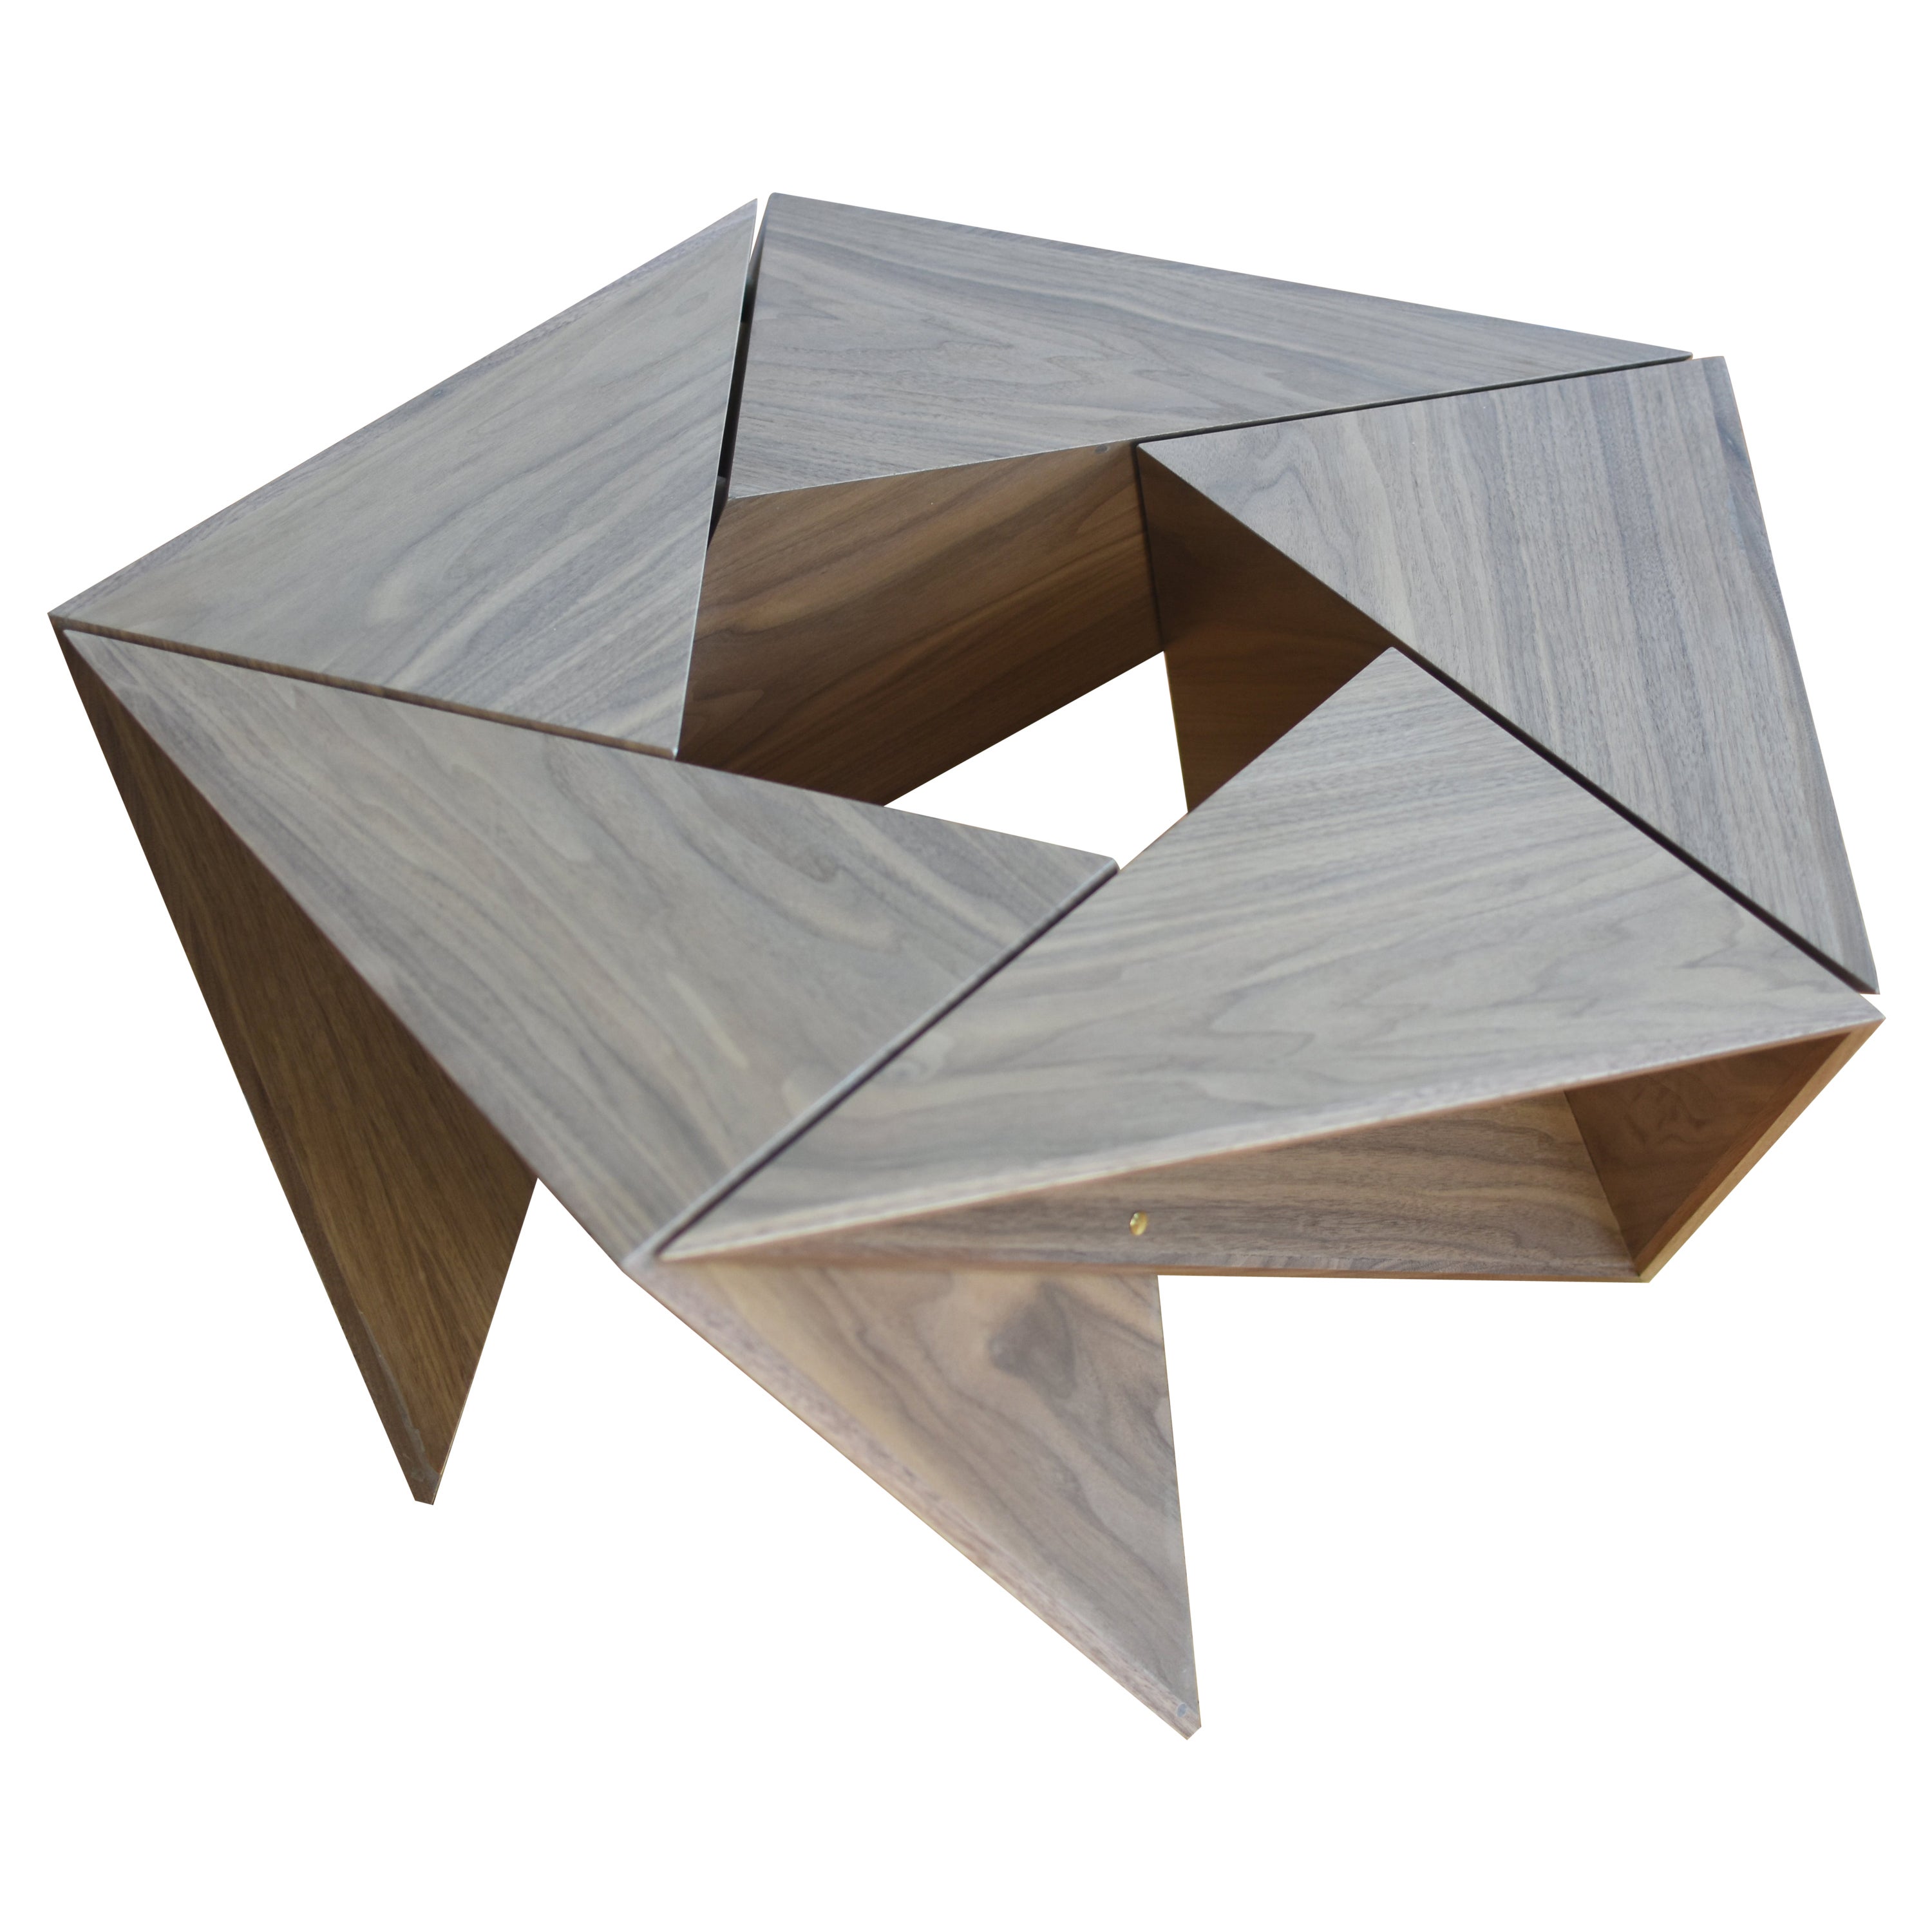 El Cangrejito, Pentagonal Modular Coffee Table Walnut Edition by Louis Lim